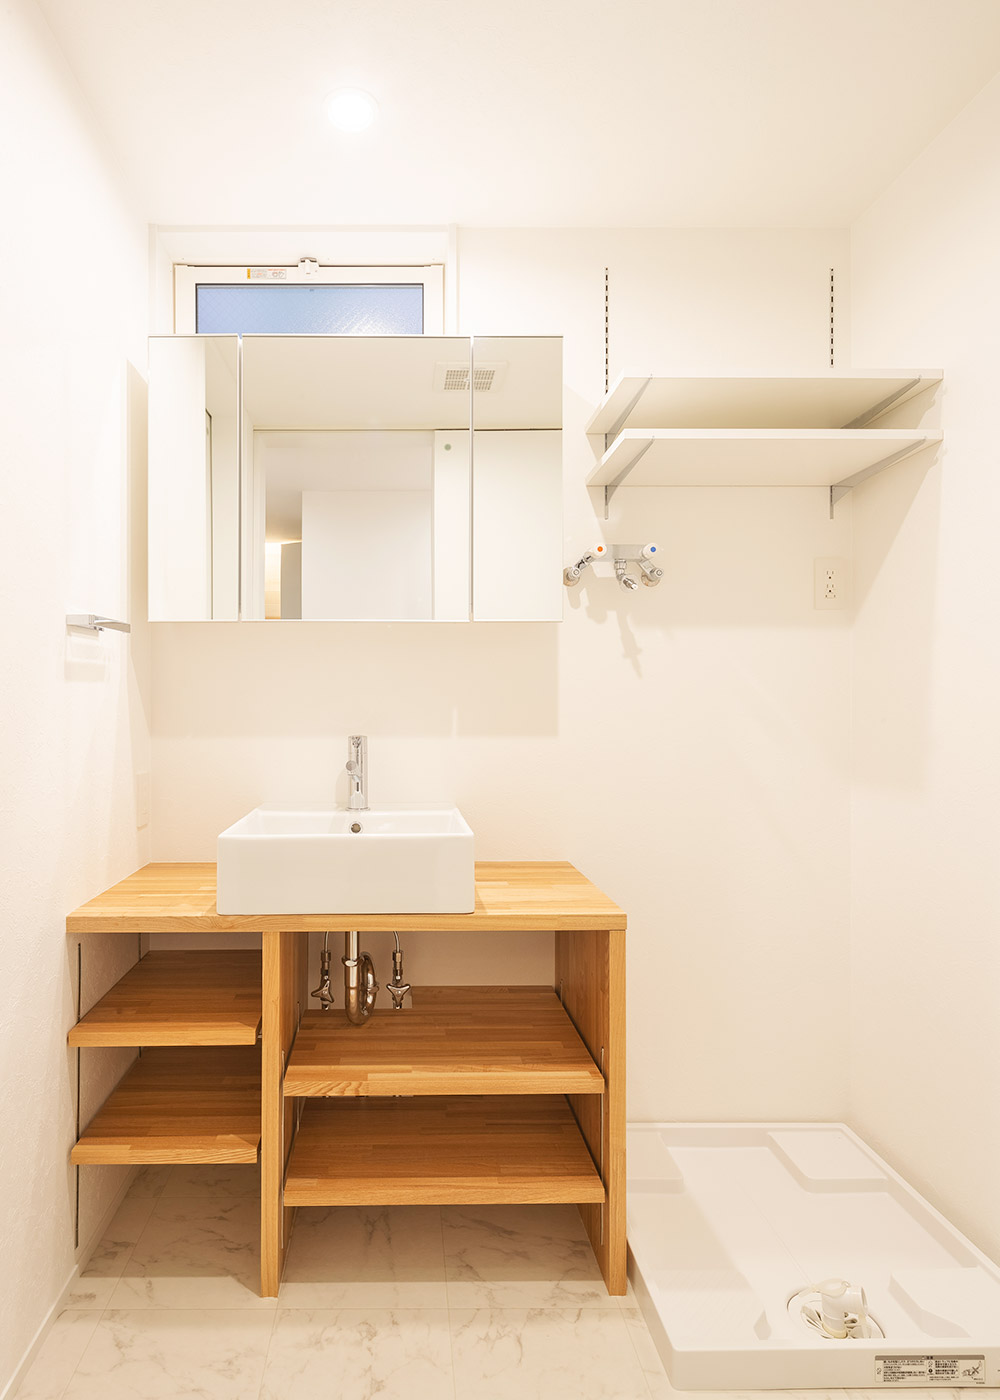 洗面所・パウダールーム施工例 デザイン住宅・リノベーションの1010house